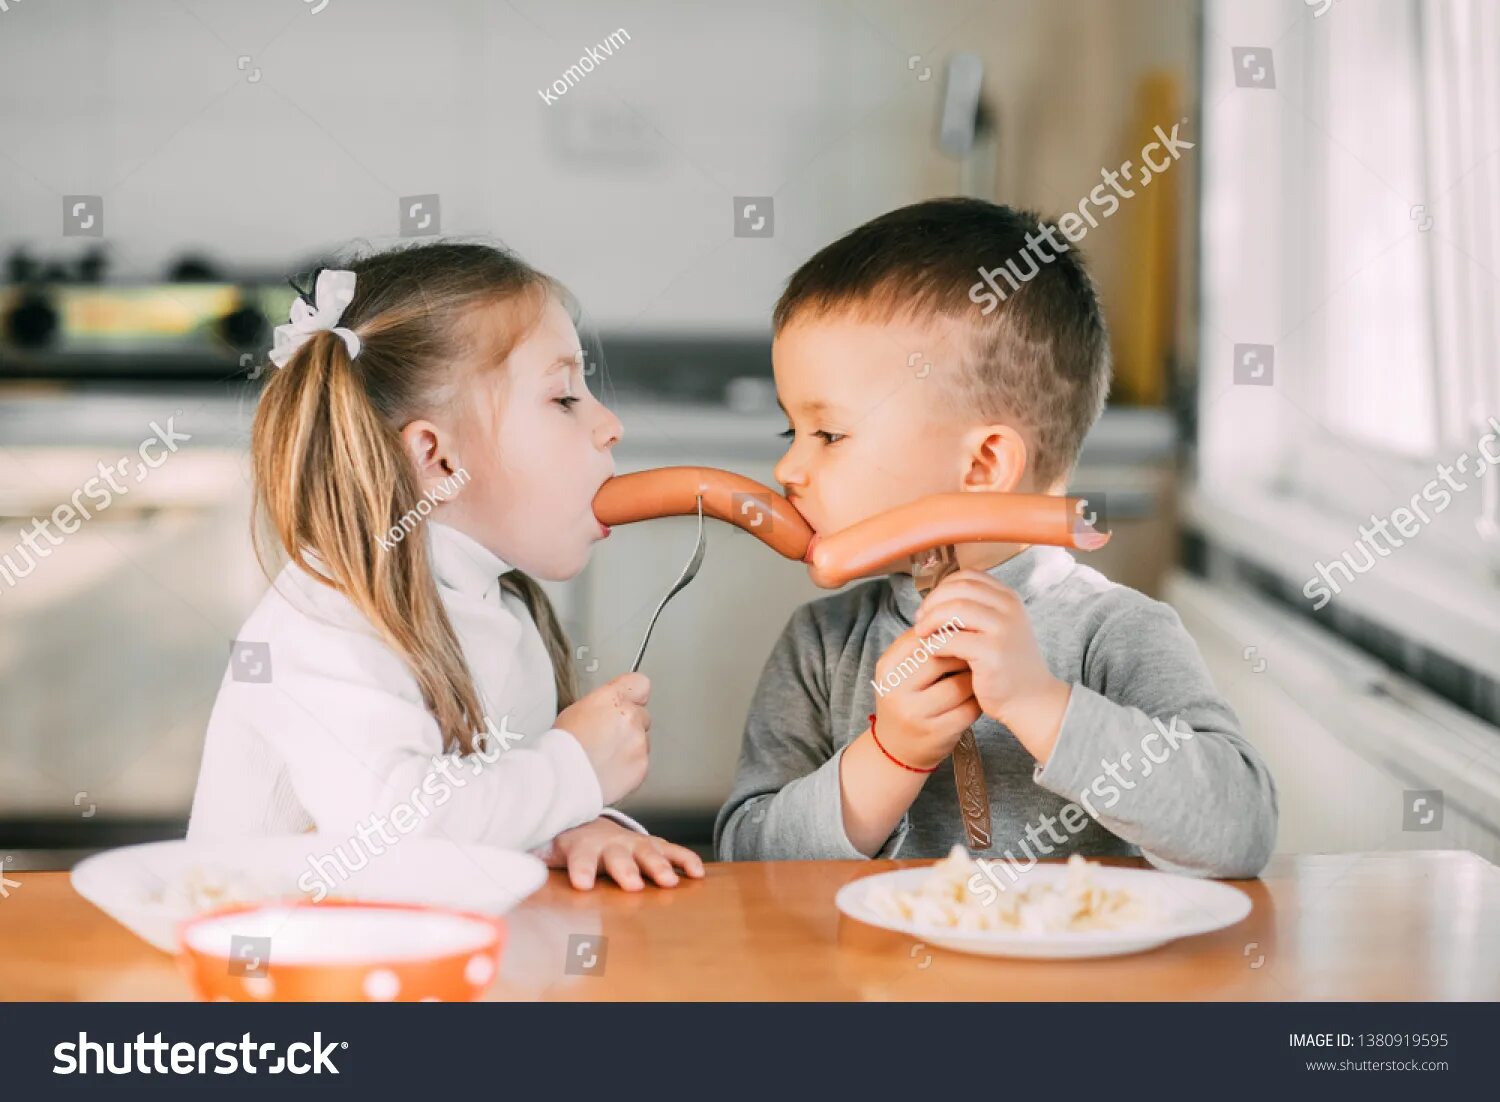 Licking boy girl. Семья ест колбасу. Семья ест сосиски. Сосиски для детей. Девочка ест сосиску.